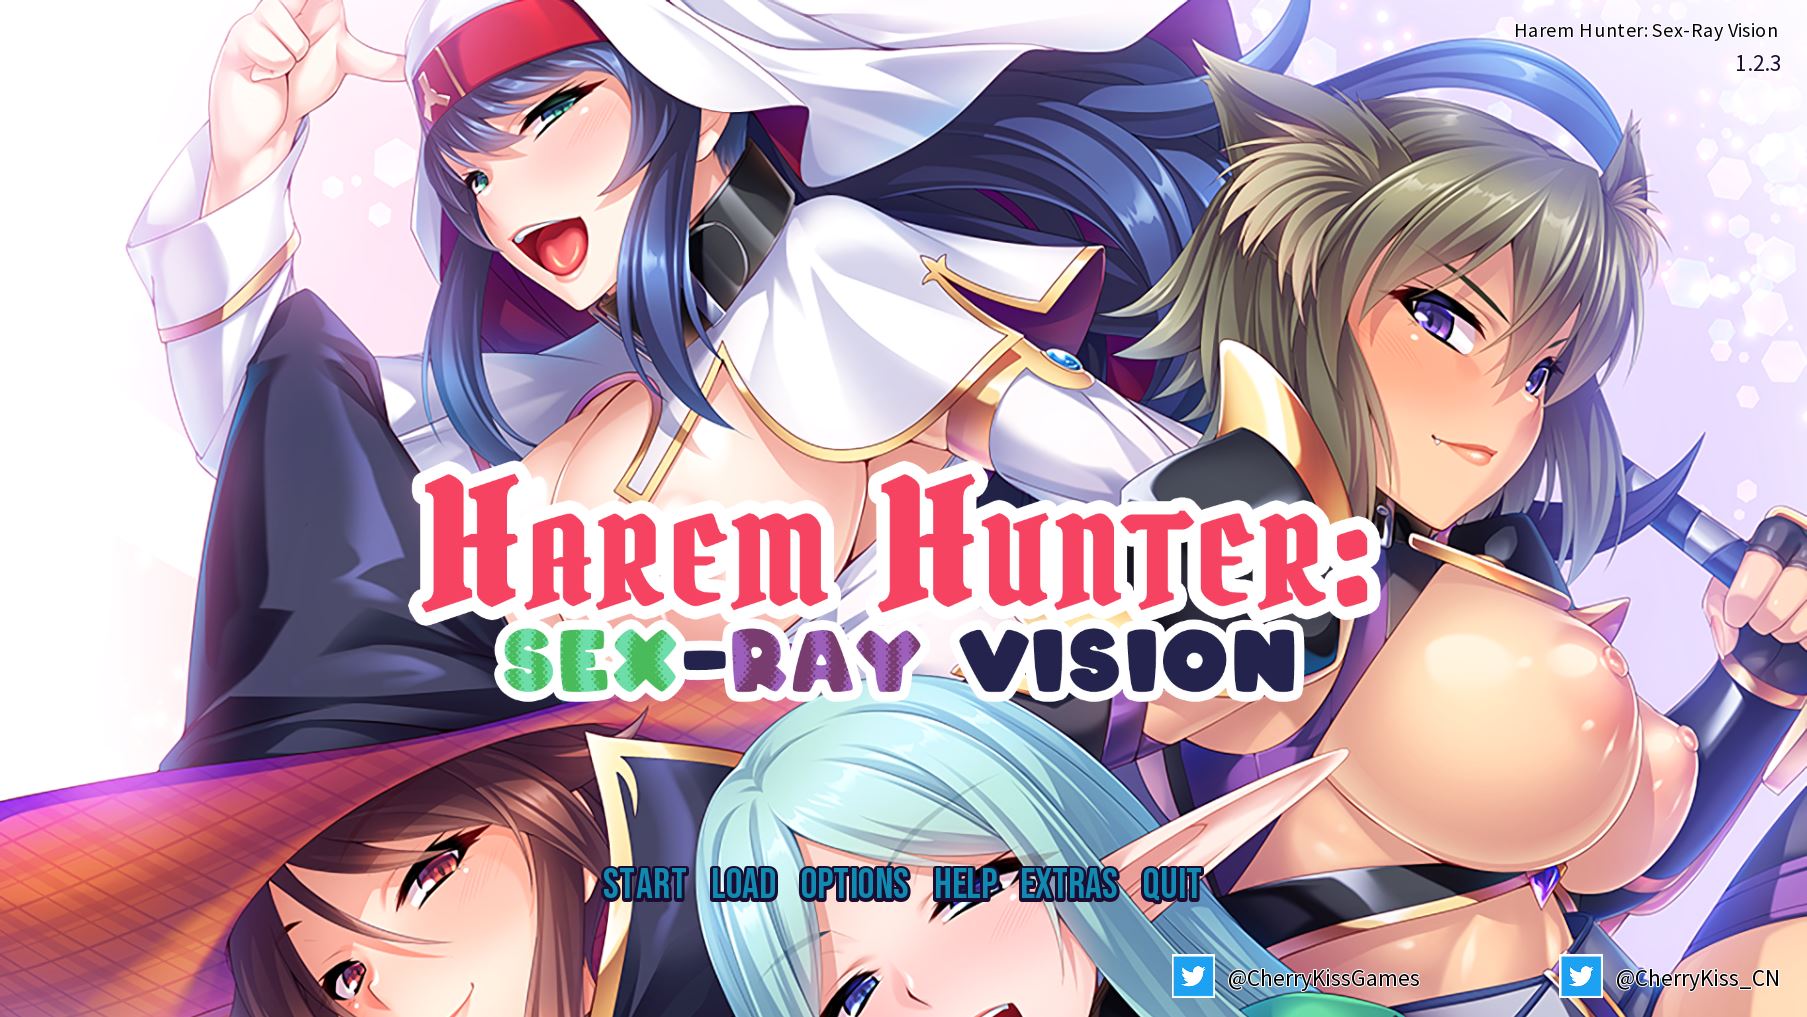 Vision Porn - Harem Hunter: Sex-ray Vision Ren'Py Porn Sex Game v.Final Download for  Windows